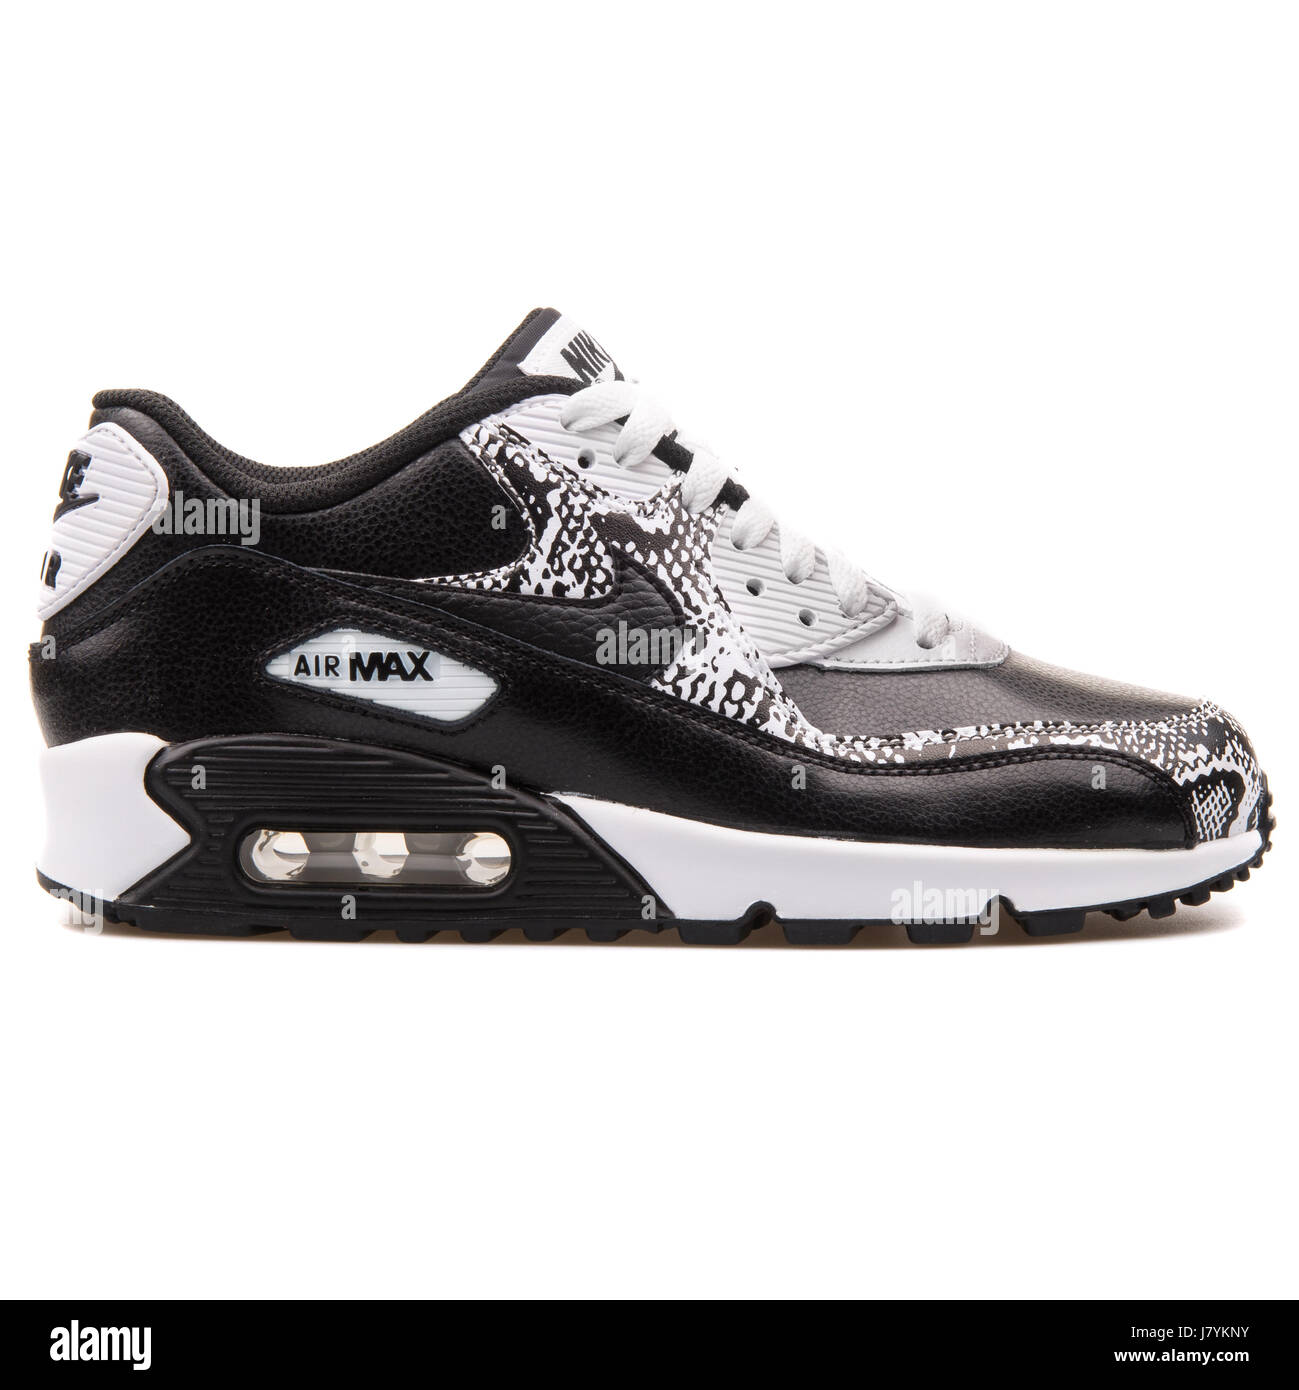 Nike Air Max 90 Premium LTR (GS) en blanco y negro de jóvenes ejecutan  Sneakers - 724871-001 Fotografía de stock - Alamy